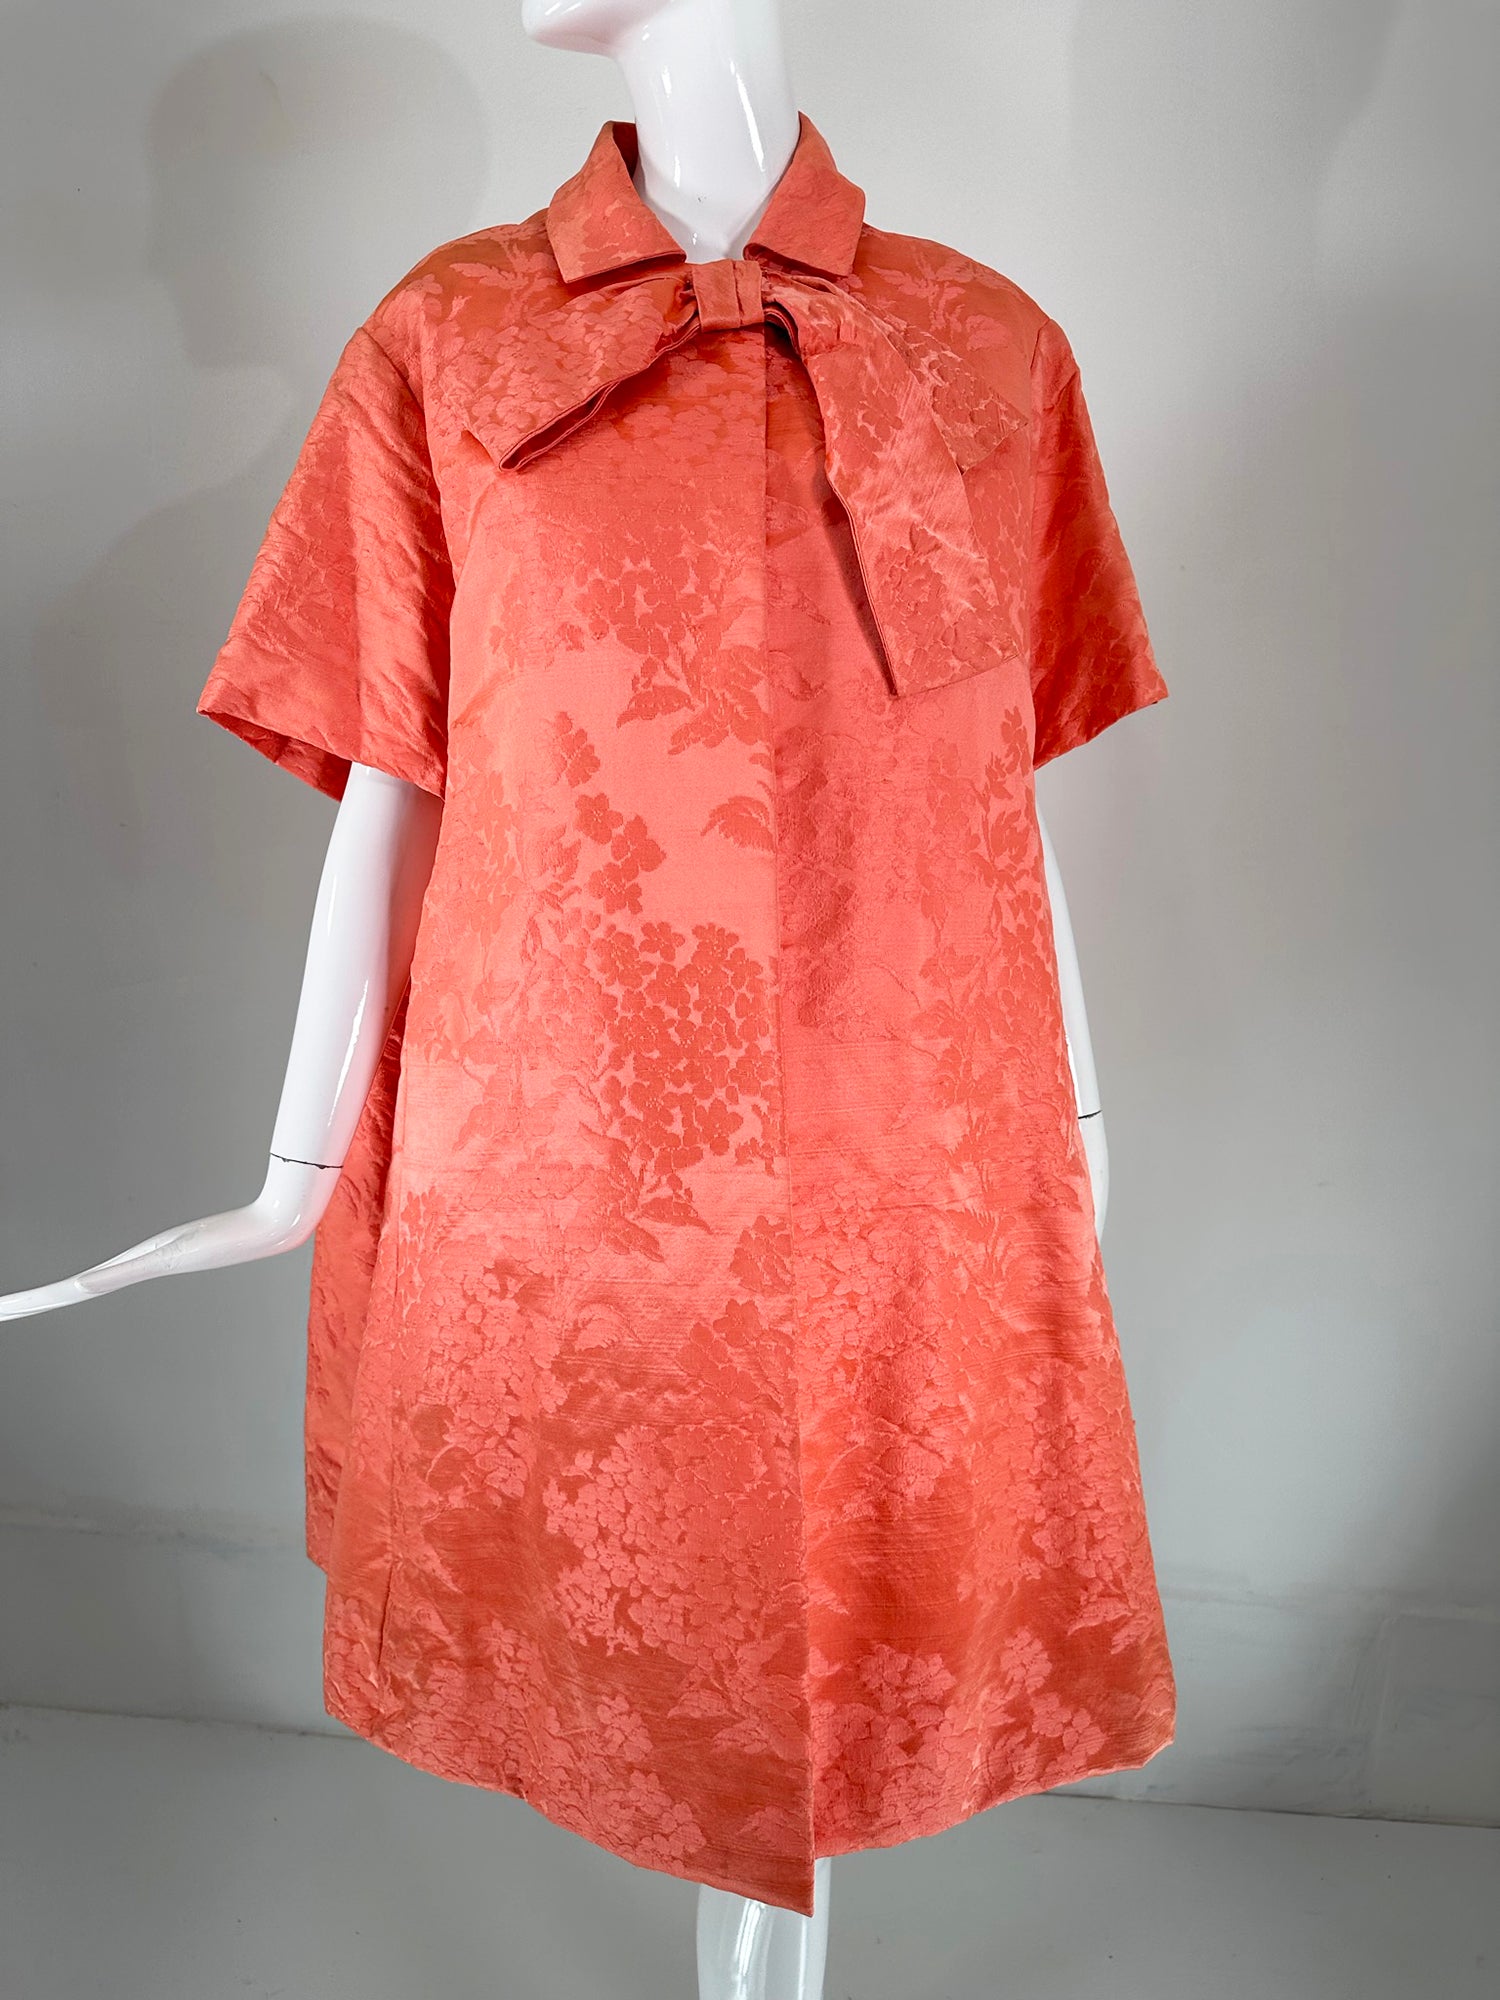 Ensemble robe et manteau Lanvin-Castello Haute Couture en brocart de soie corail des années 1950. Lanvin est la plus ancienne maison de couture française, fondée par Jeanne Lanvin à Paris en 1889, à l'issue de son apprentissage de la chapellerie.